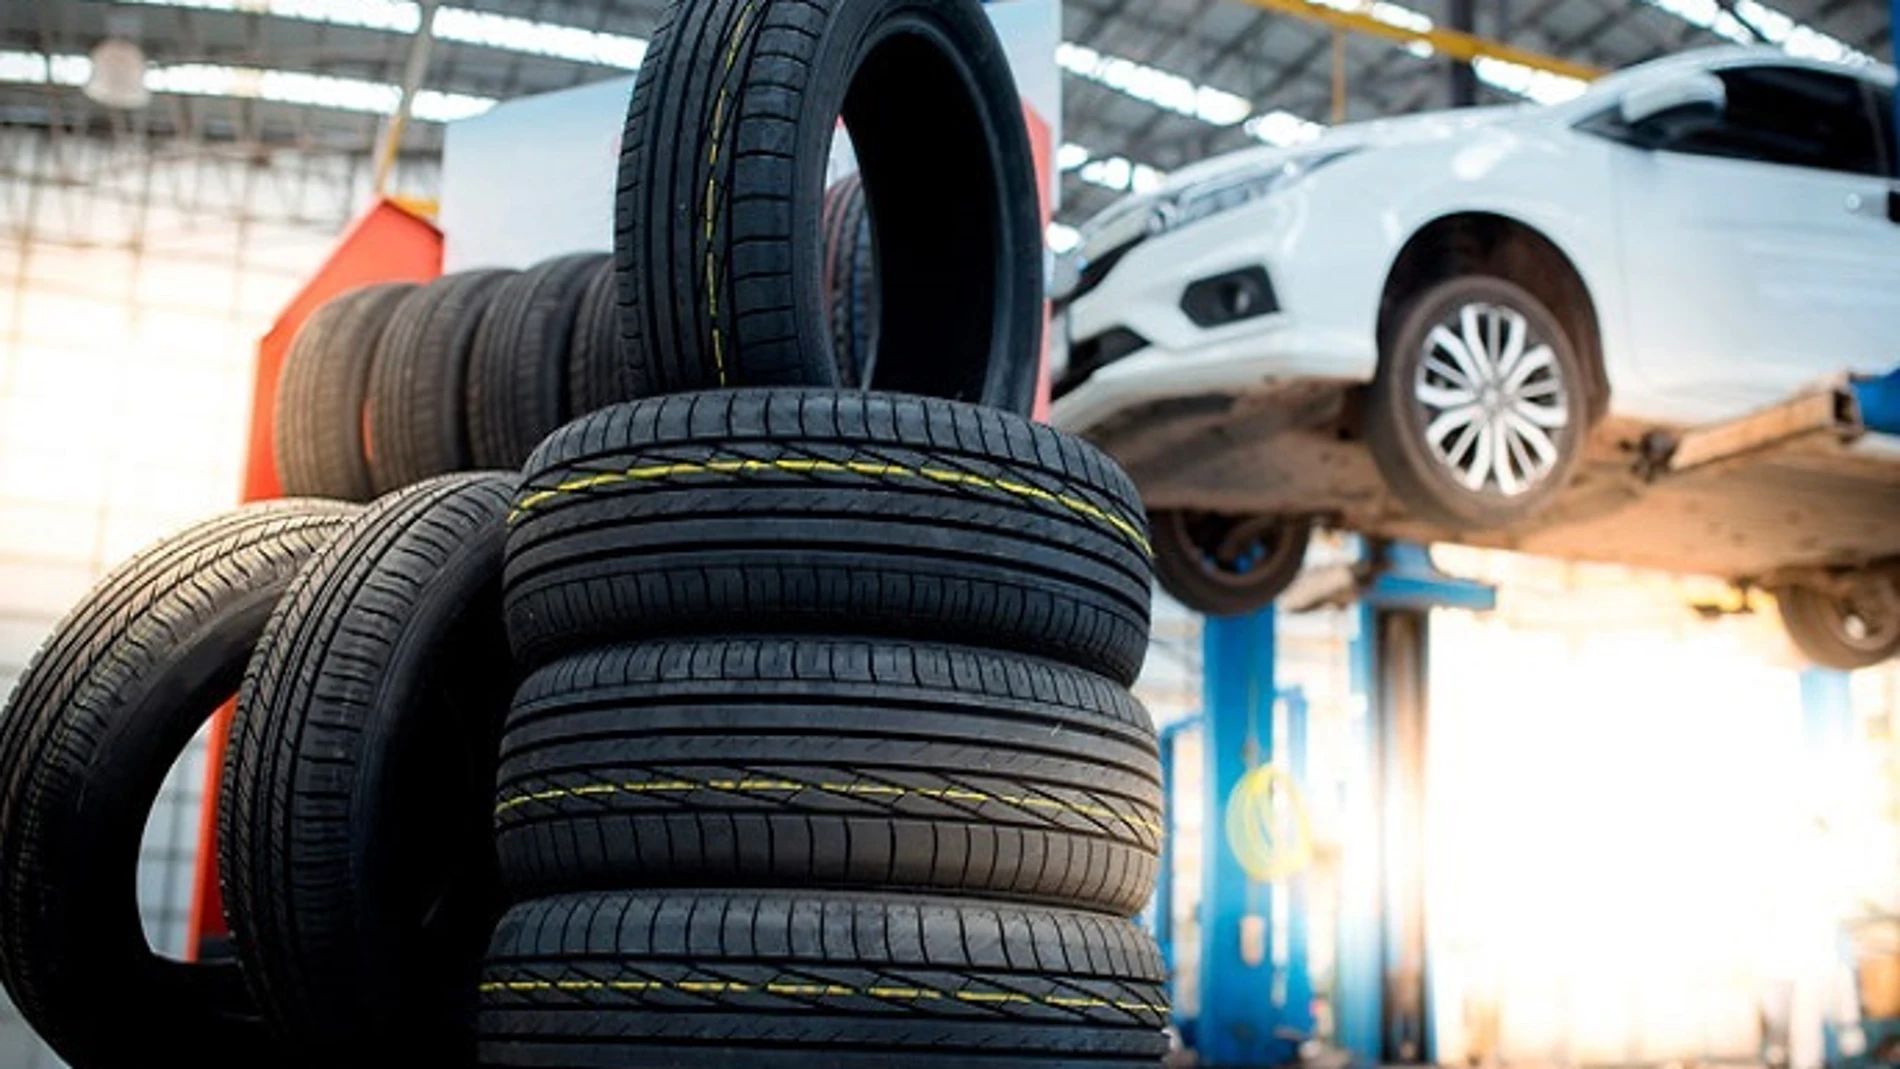 Economía/Motor.- Adine dice que los talleres de neumáticos pueden abrir por ser un "servicio esencial" a pesar del virus